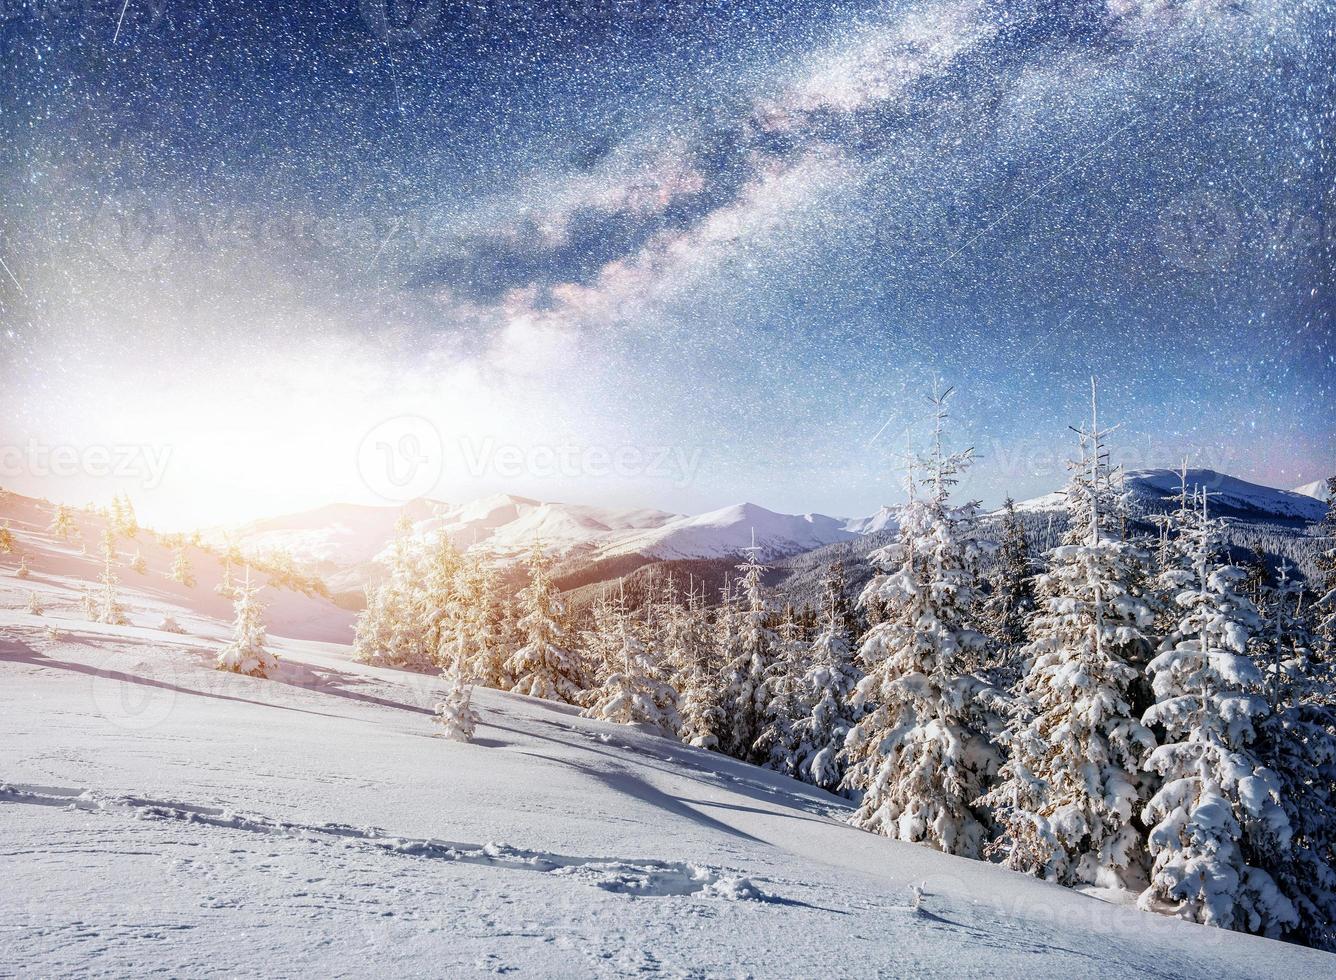 stjärnhimmel i vinter snöig natt. fantastiska Vintergatan foto